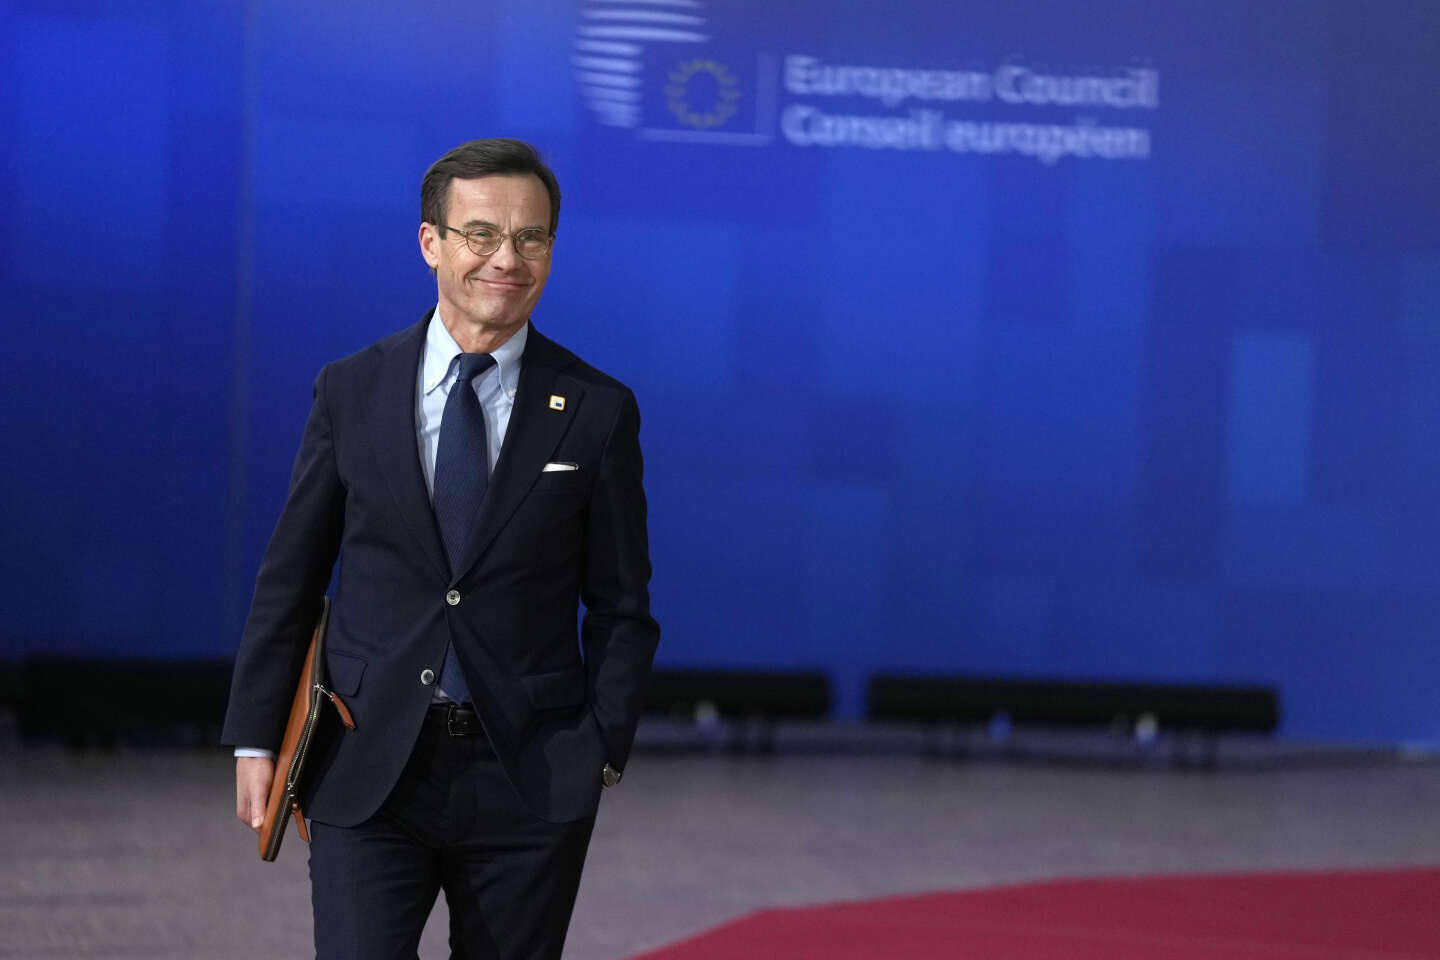 Szwecja bez entuzjazmu sprawuje prezydencję w Radzie Unii Europejskiej